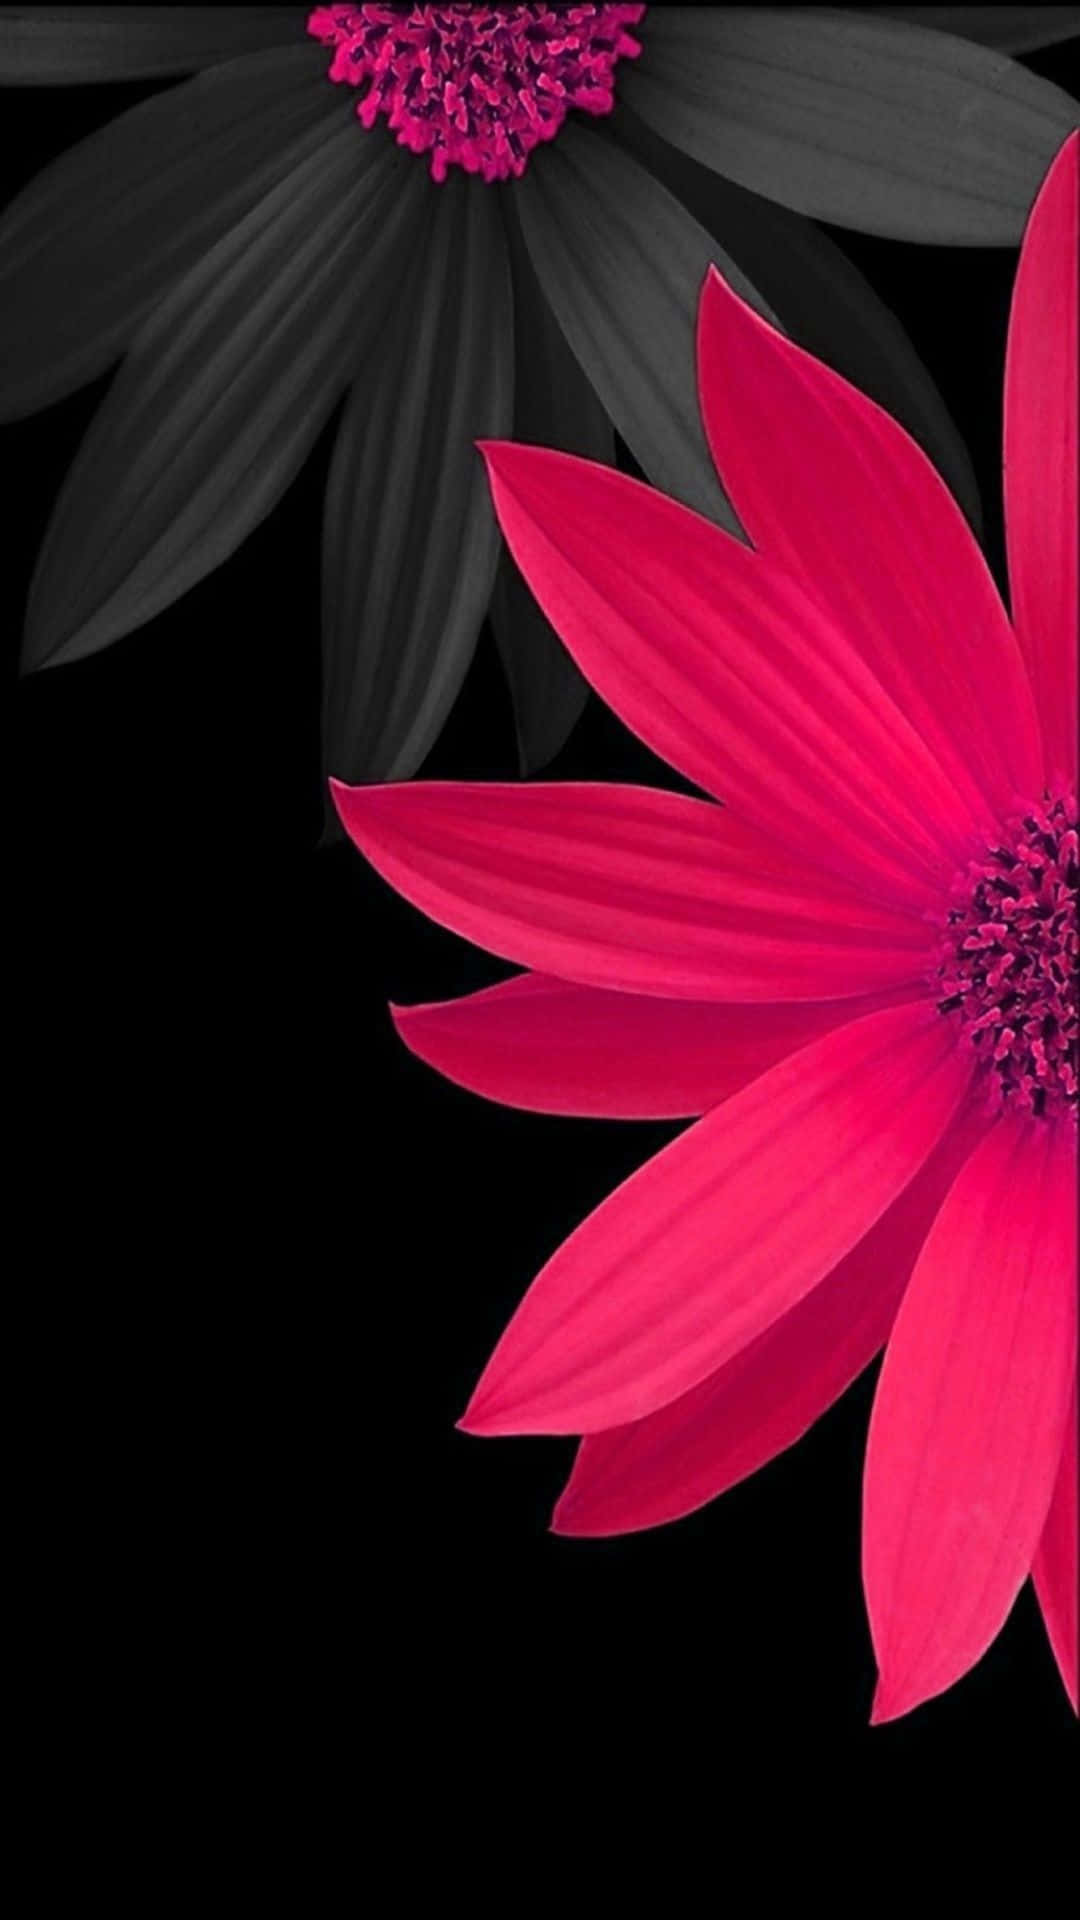 Wallpaperdaisy Blommor I Svart Och Rosa Iphone Bakgrundsbild. Wallpaper